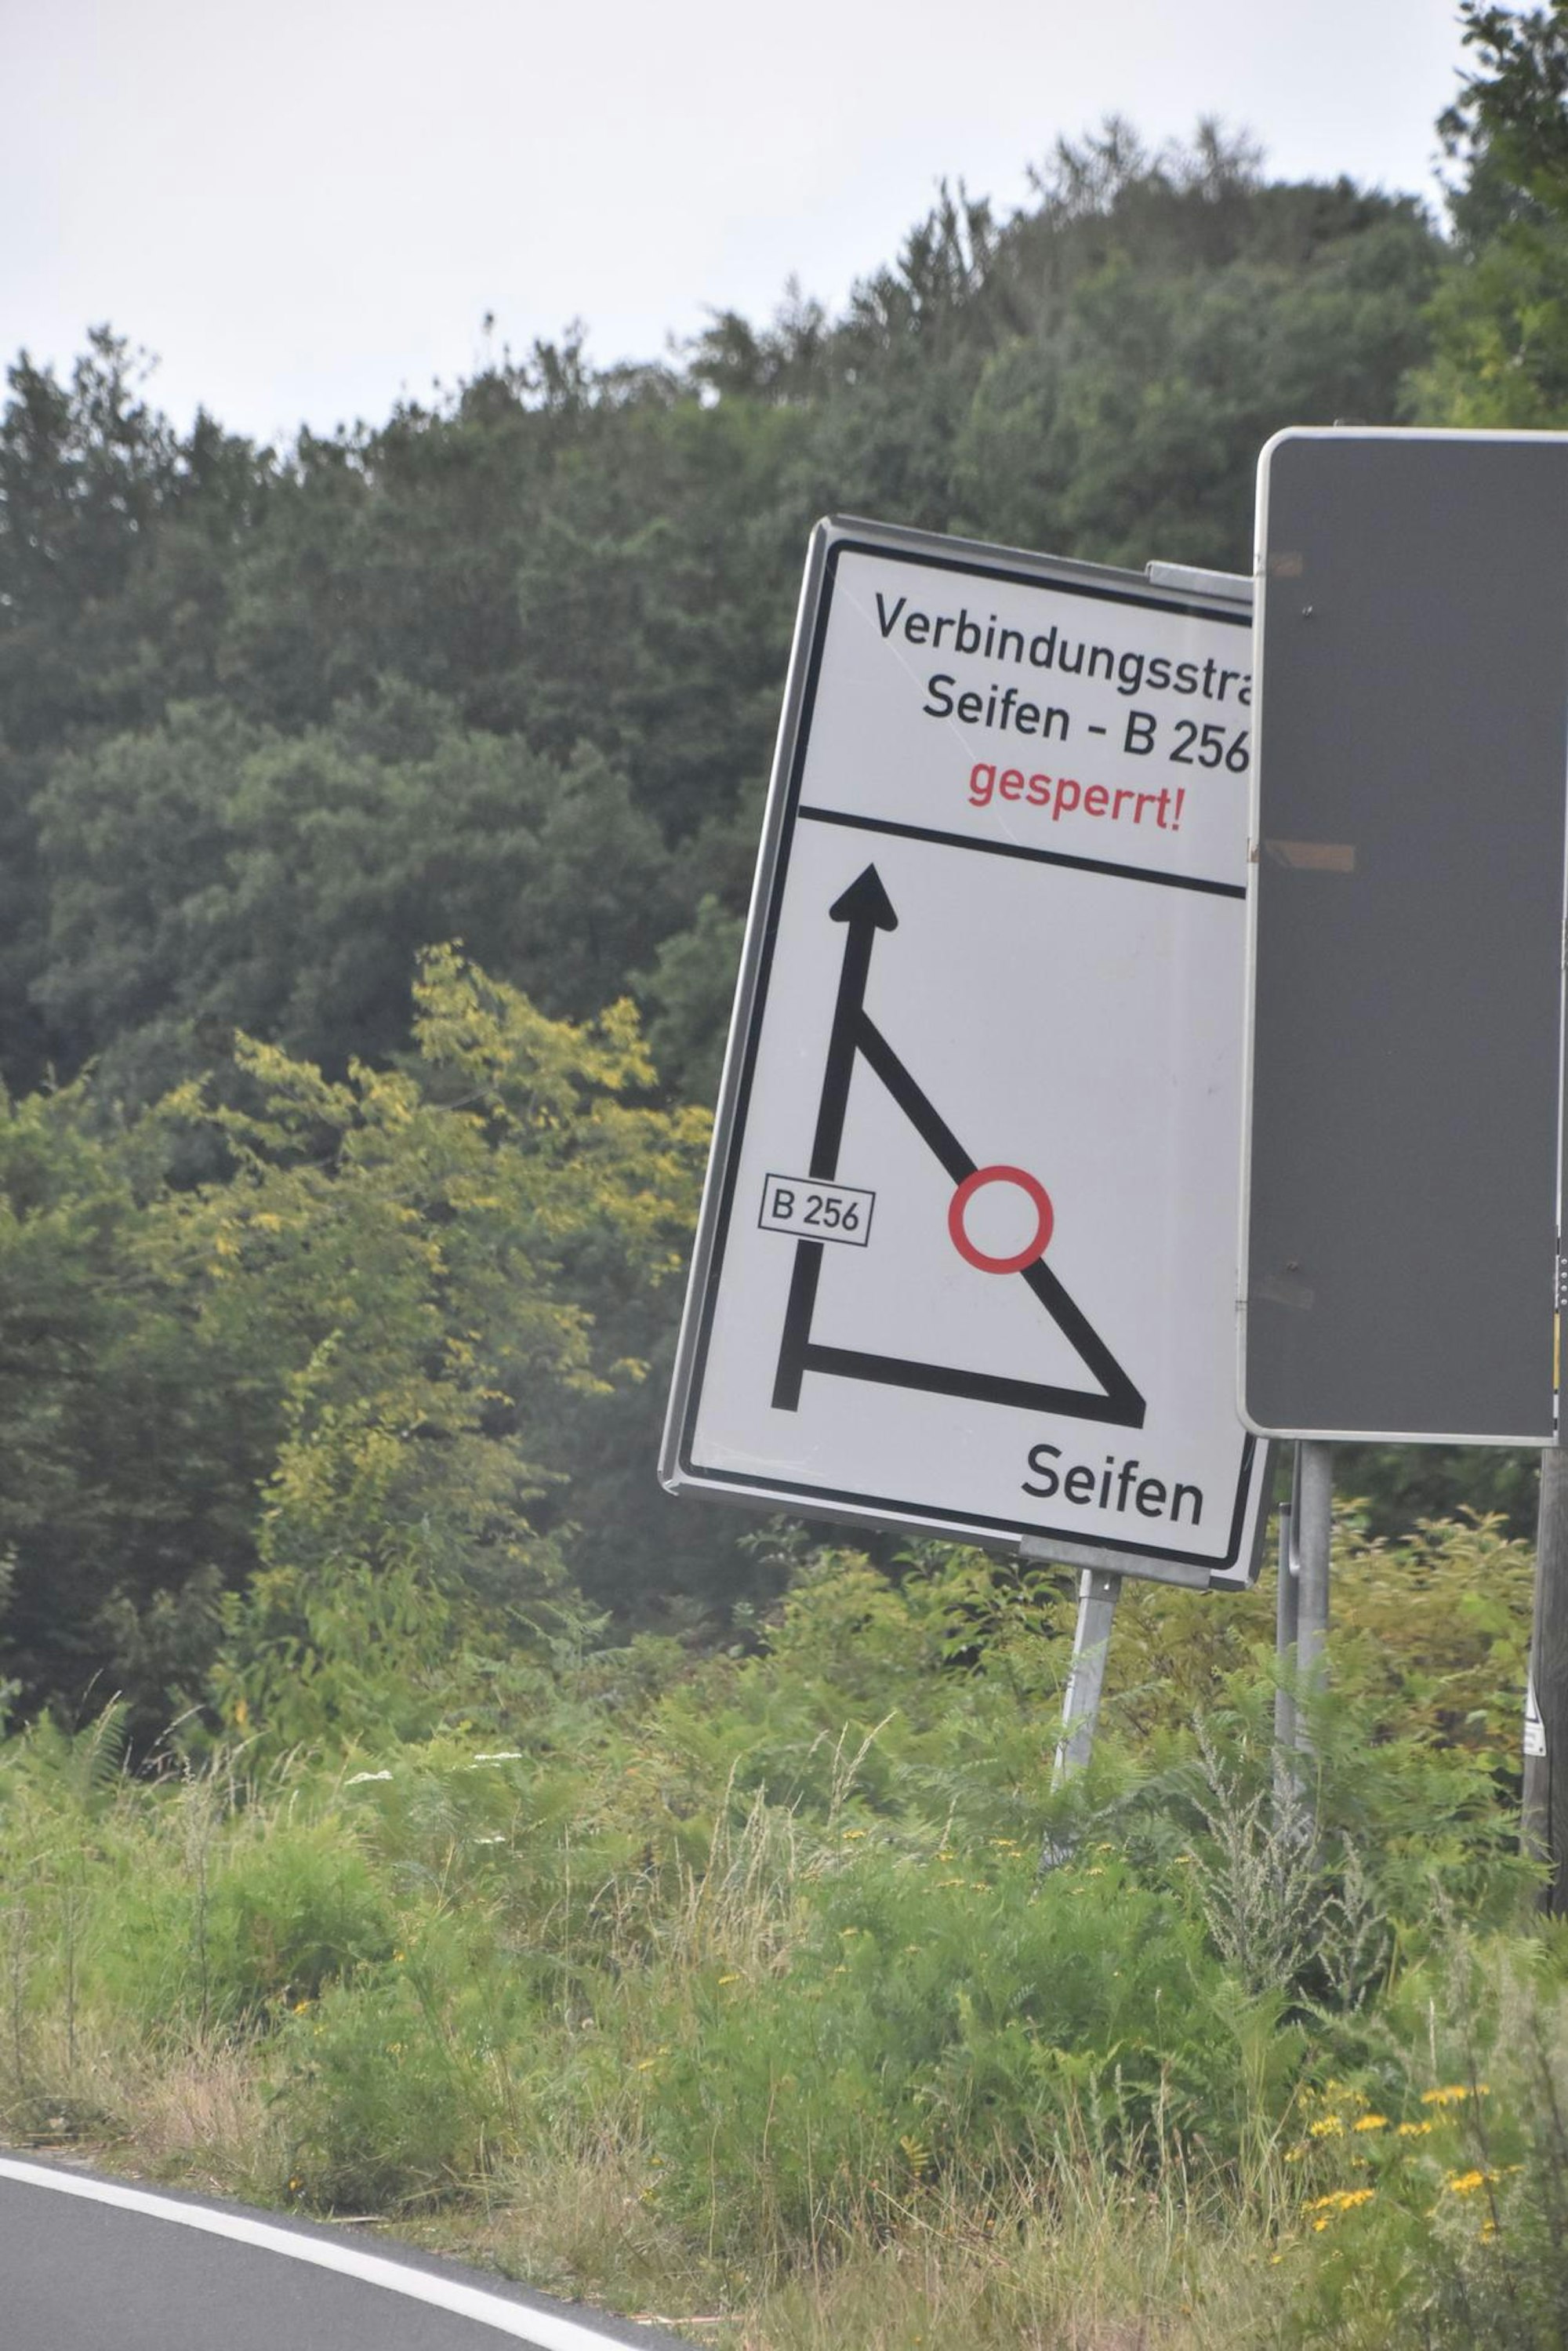 Auf beiden Schildern ist in Richtung Seifen eine Strecke ausgewiesen, die offenbar ebenfalls zumindest zeitweise gesperrt war.